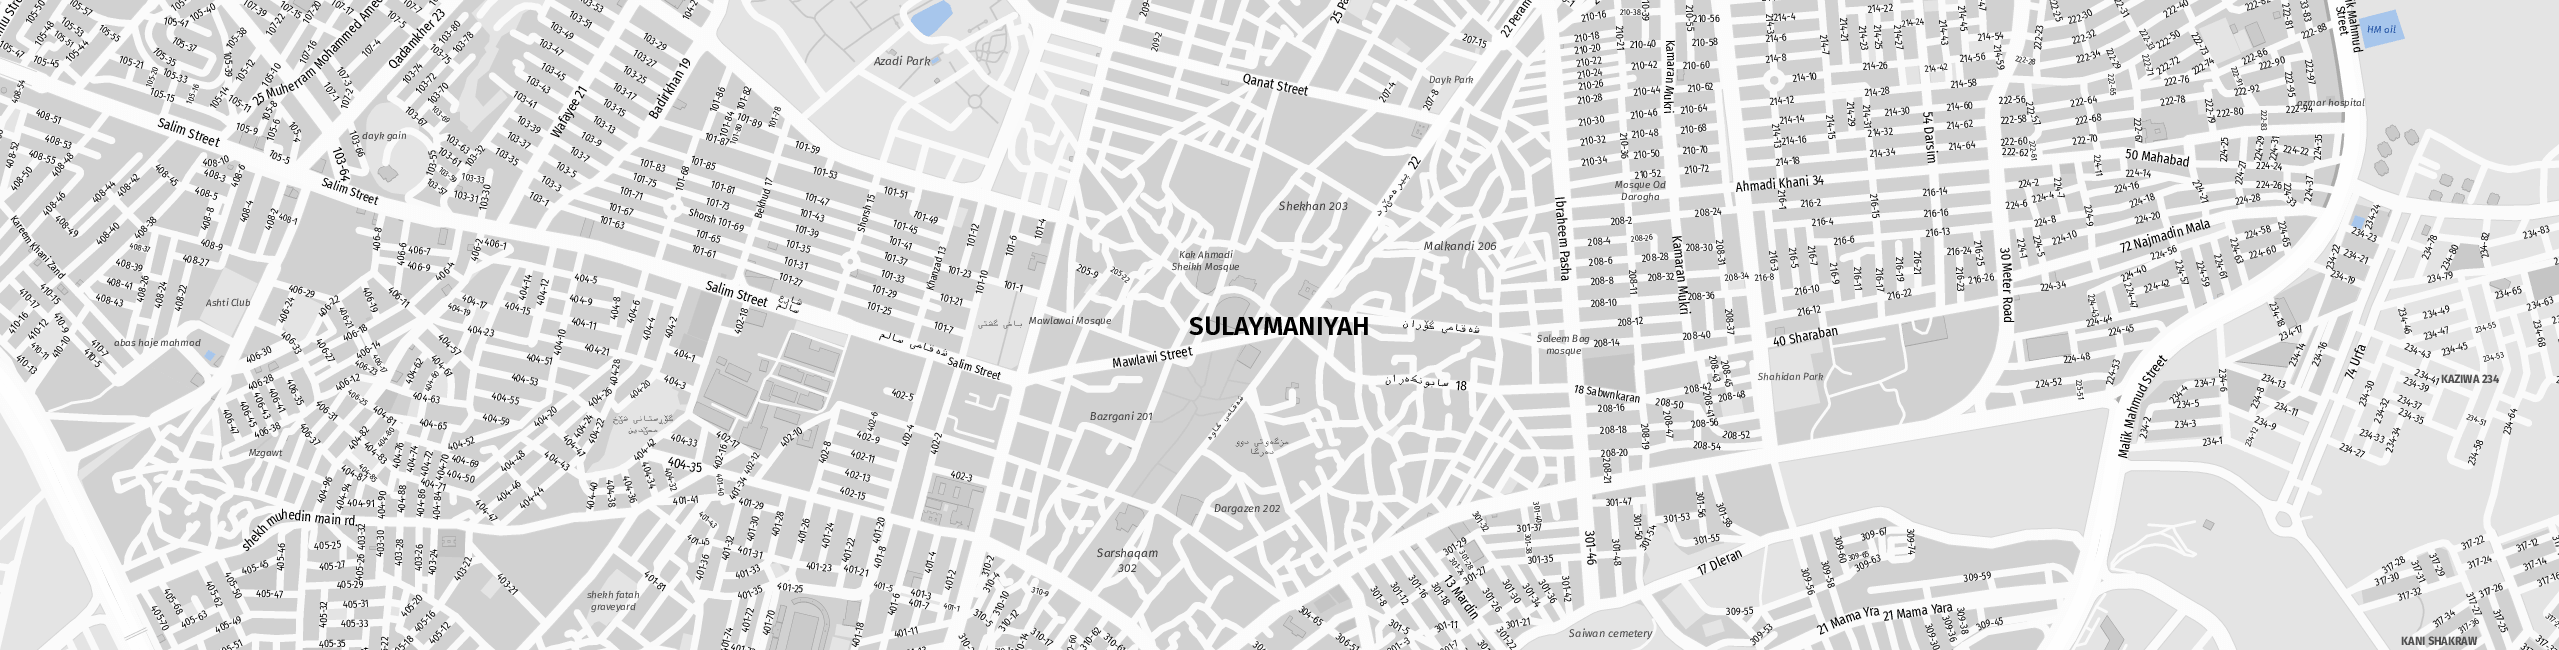 Stadtplan Sulaymaniyah zum Downloaden.